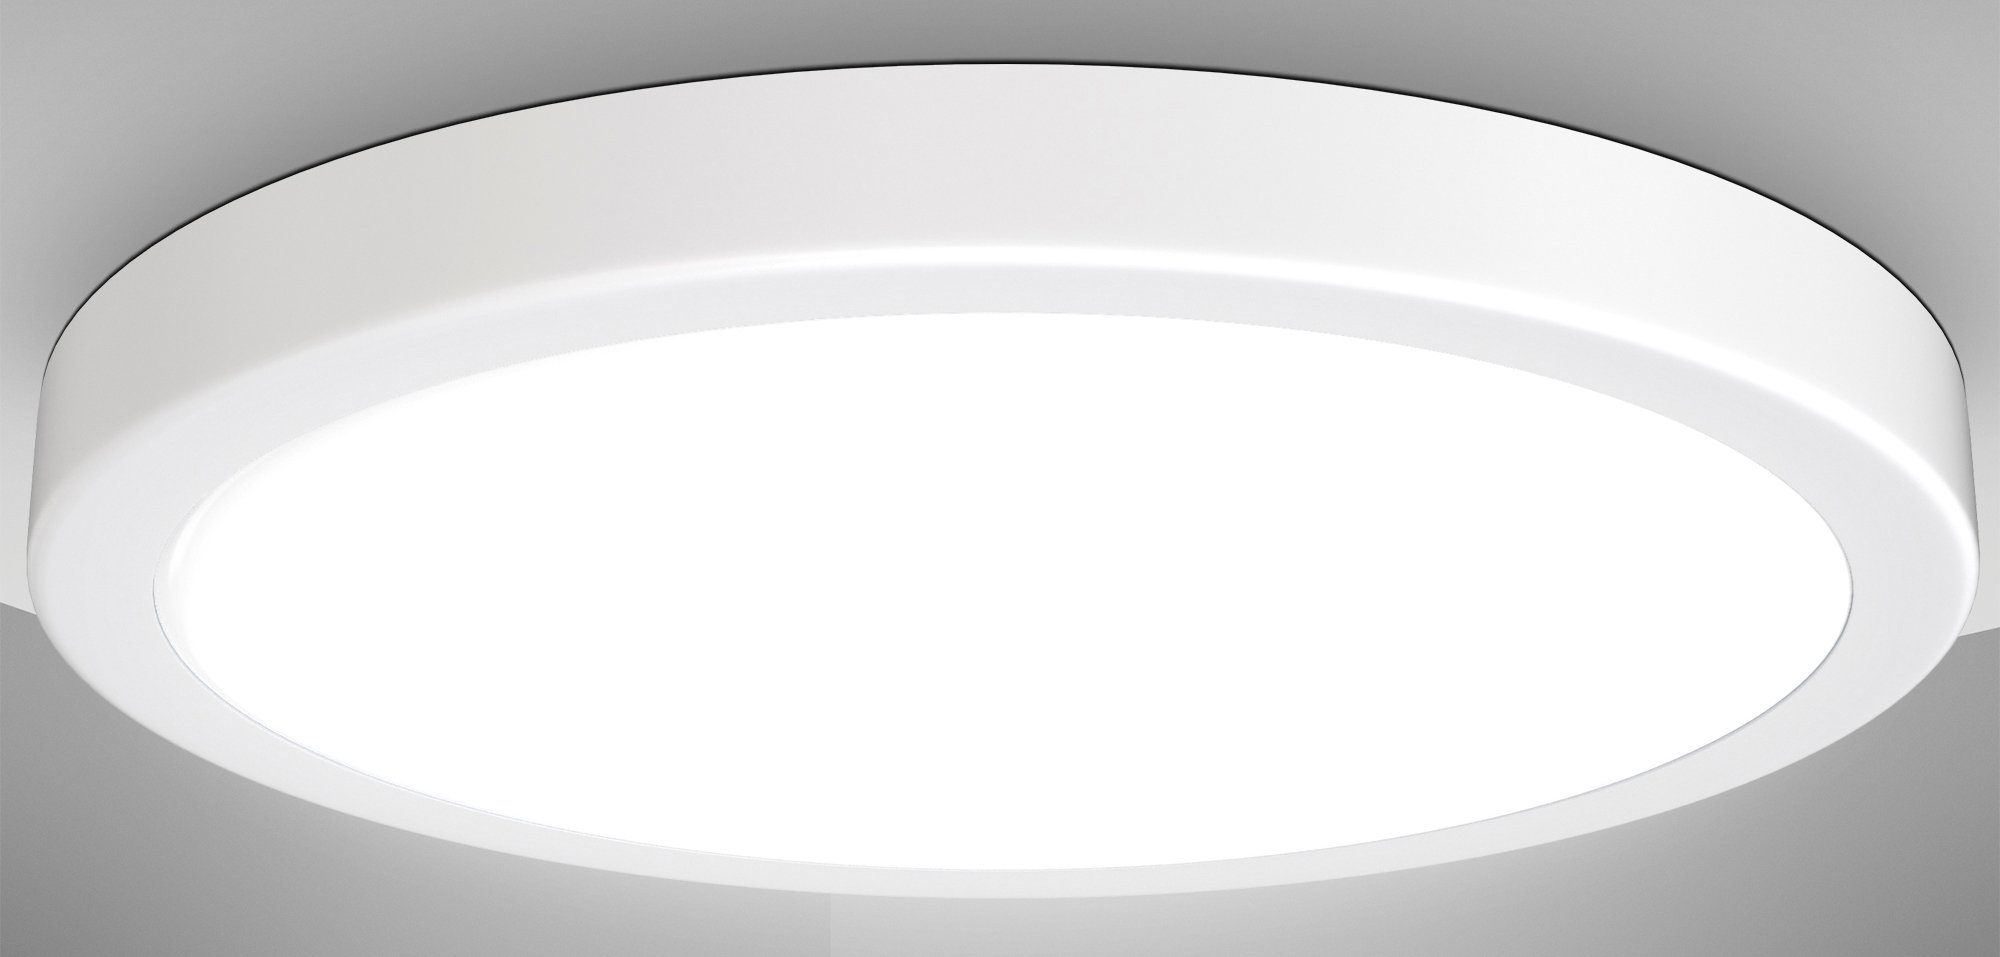 B.K.Licht LED Deckenleuchte BK_DL1538 LED Deckenlampe, 24W, 4.000K Neutralweißes Licht, Ø38cm, LED fest integriert, Neutralweiß, 3.000 Lumen, Weiße Küchenleuchte | Deckenlampen